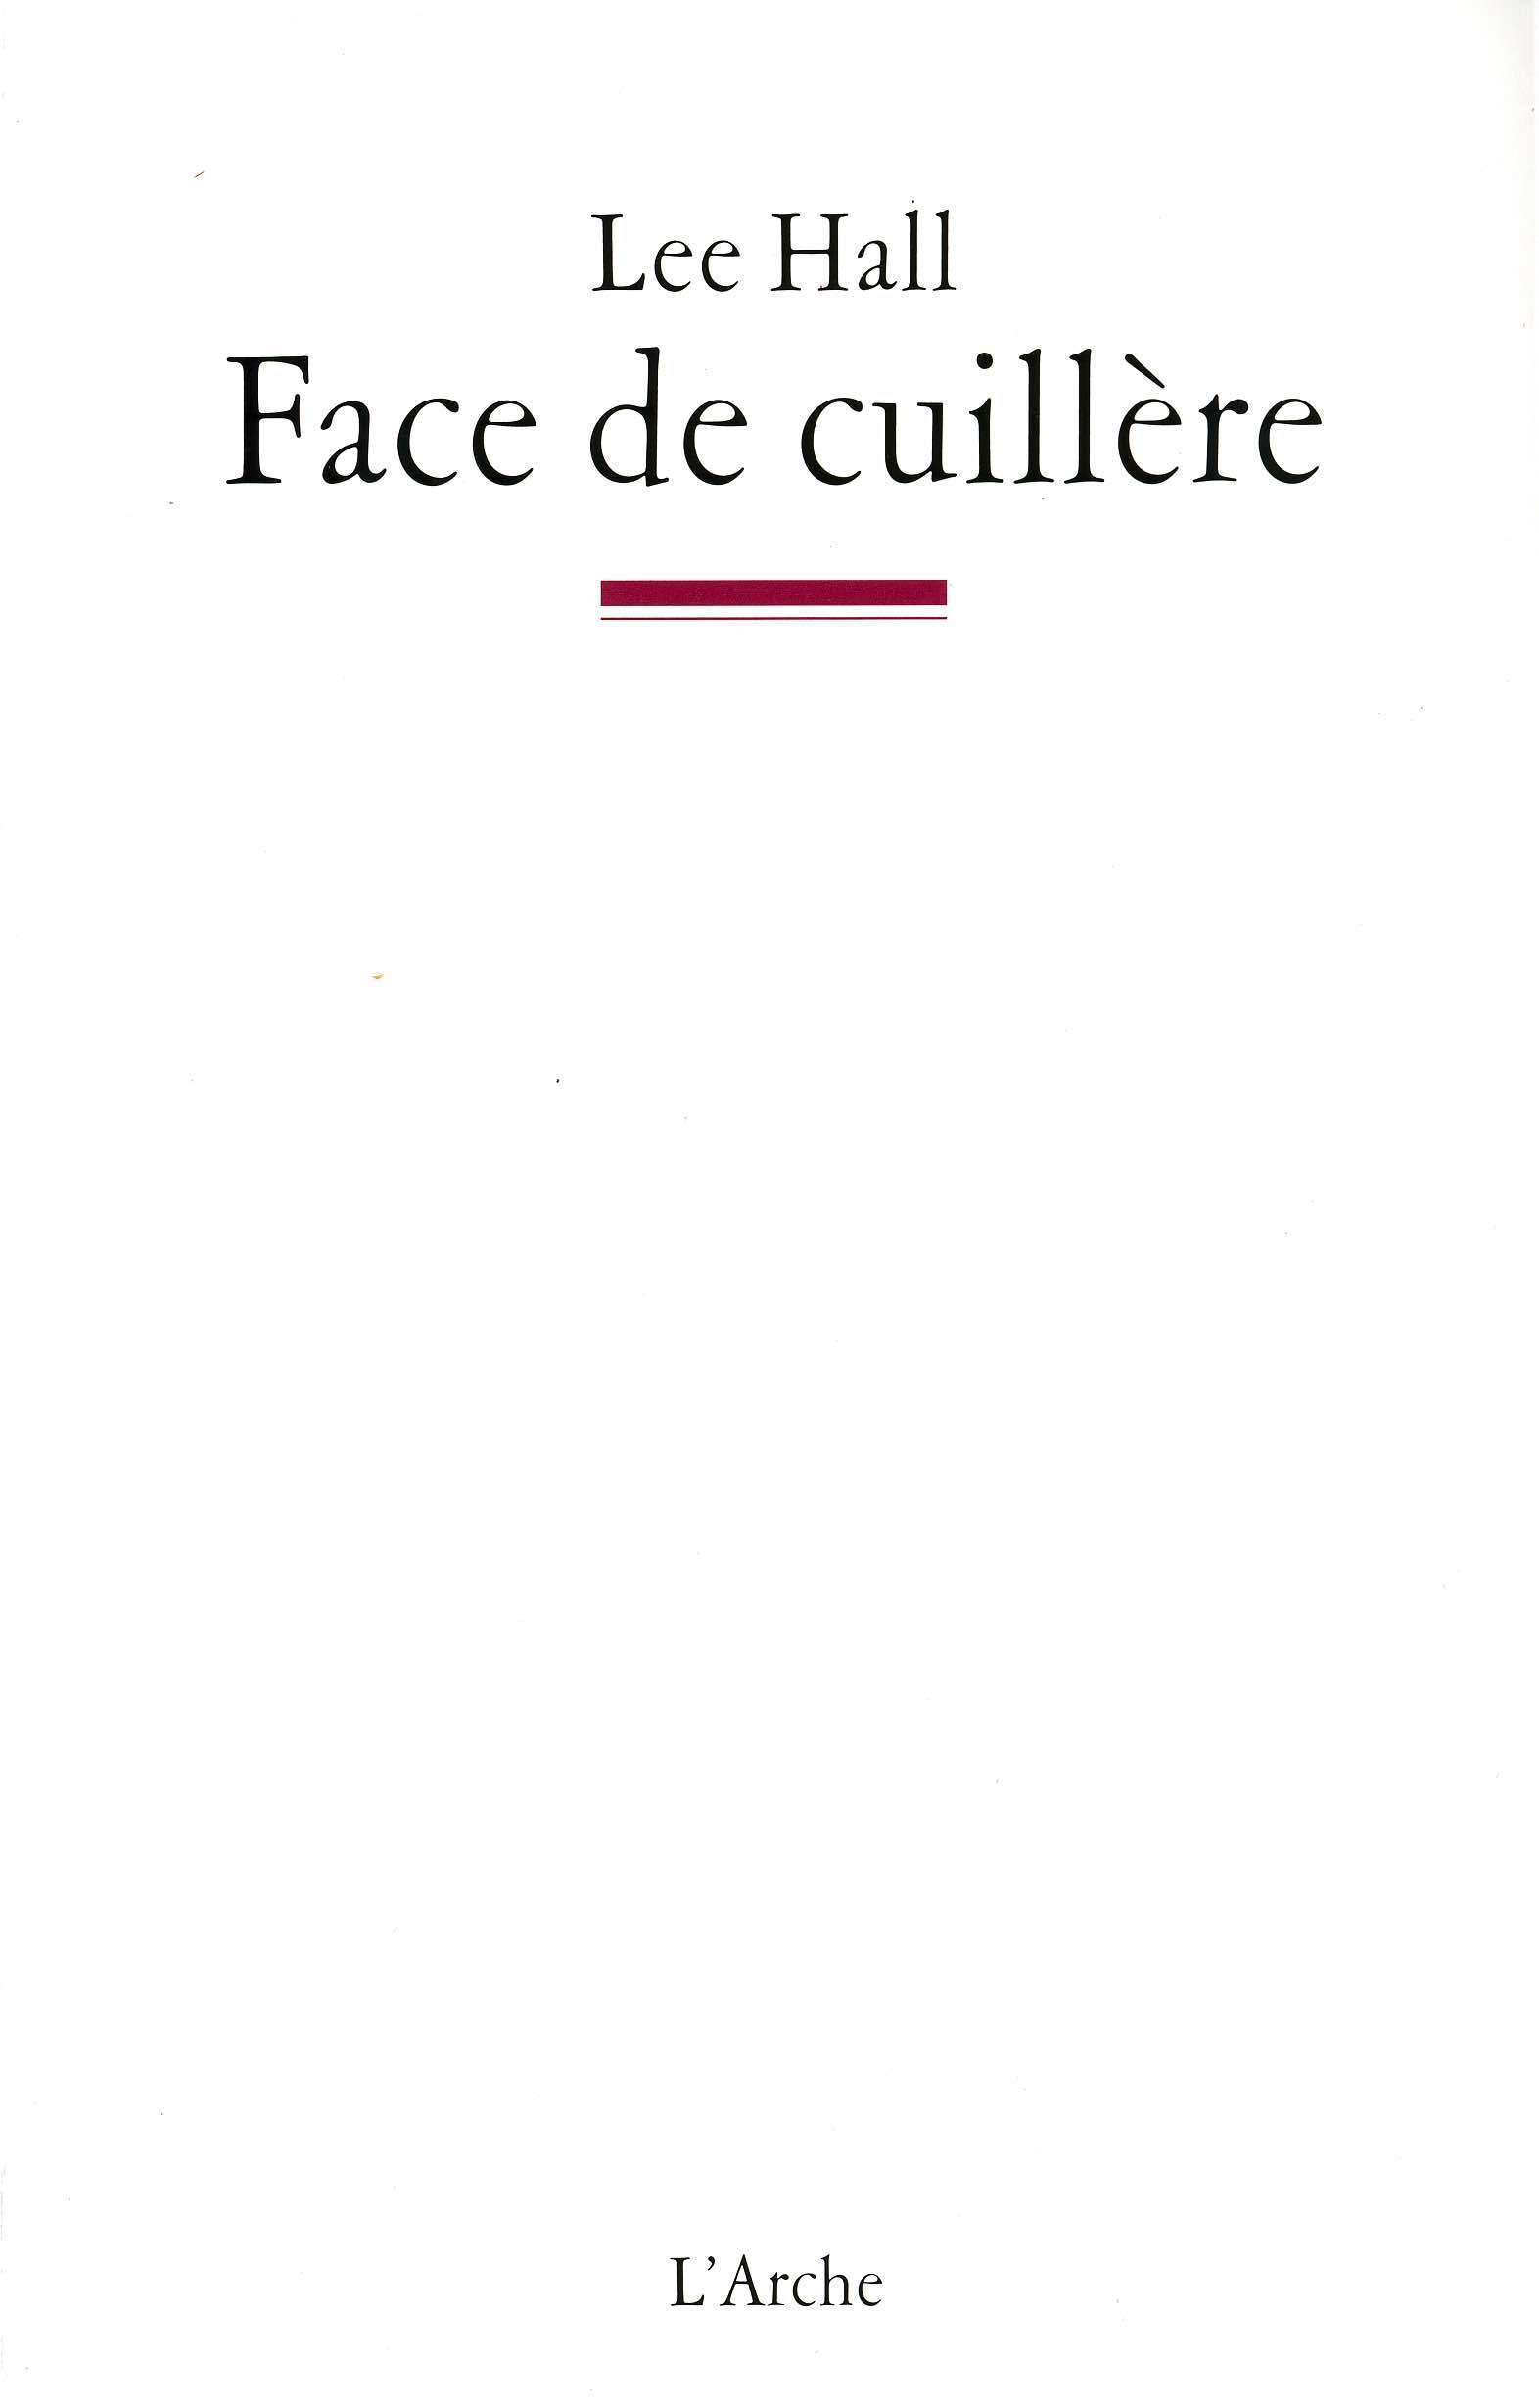 Face de Cuillère (9782851815552-front-cover)